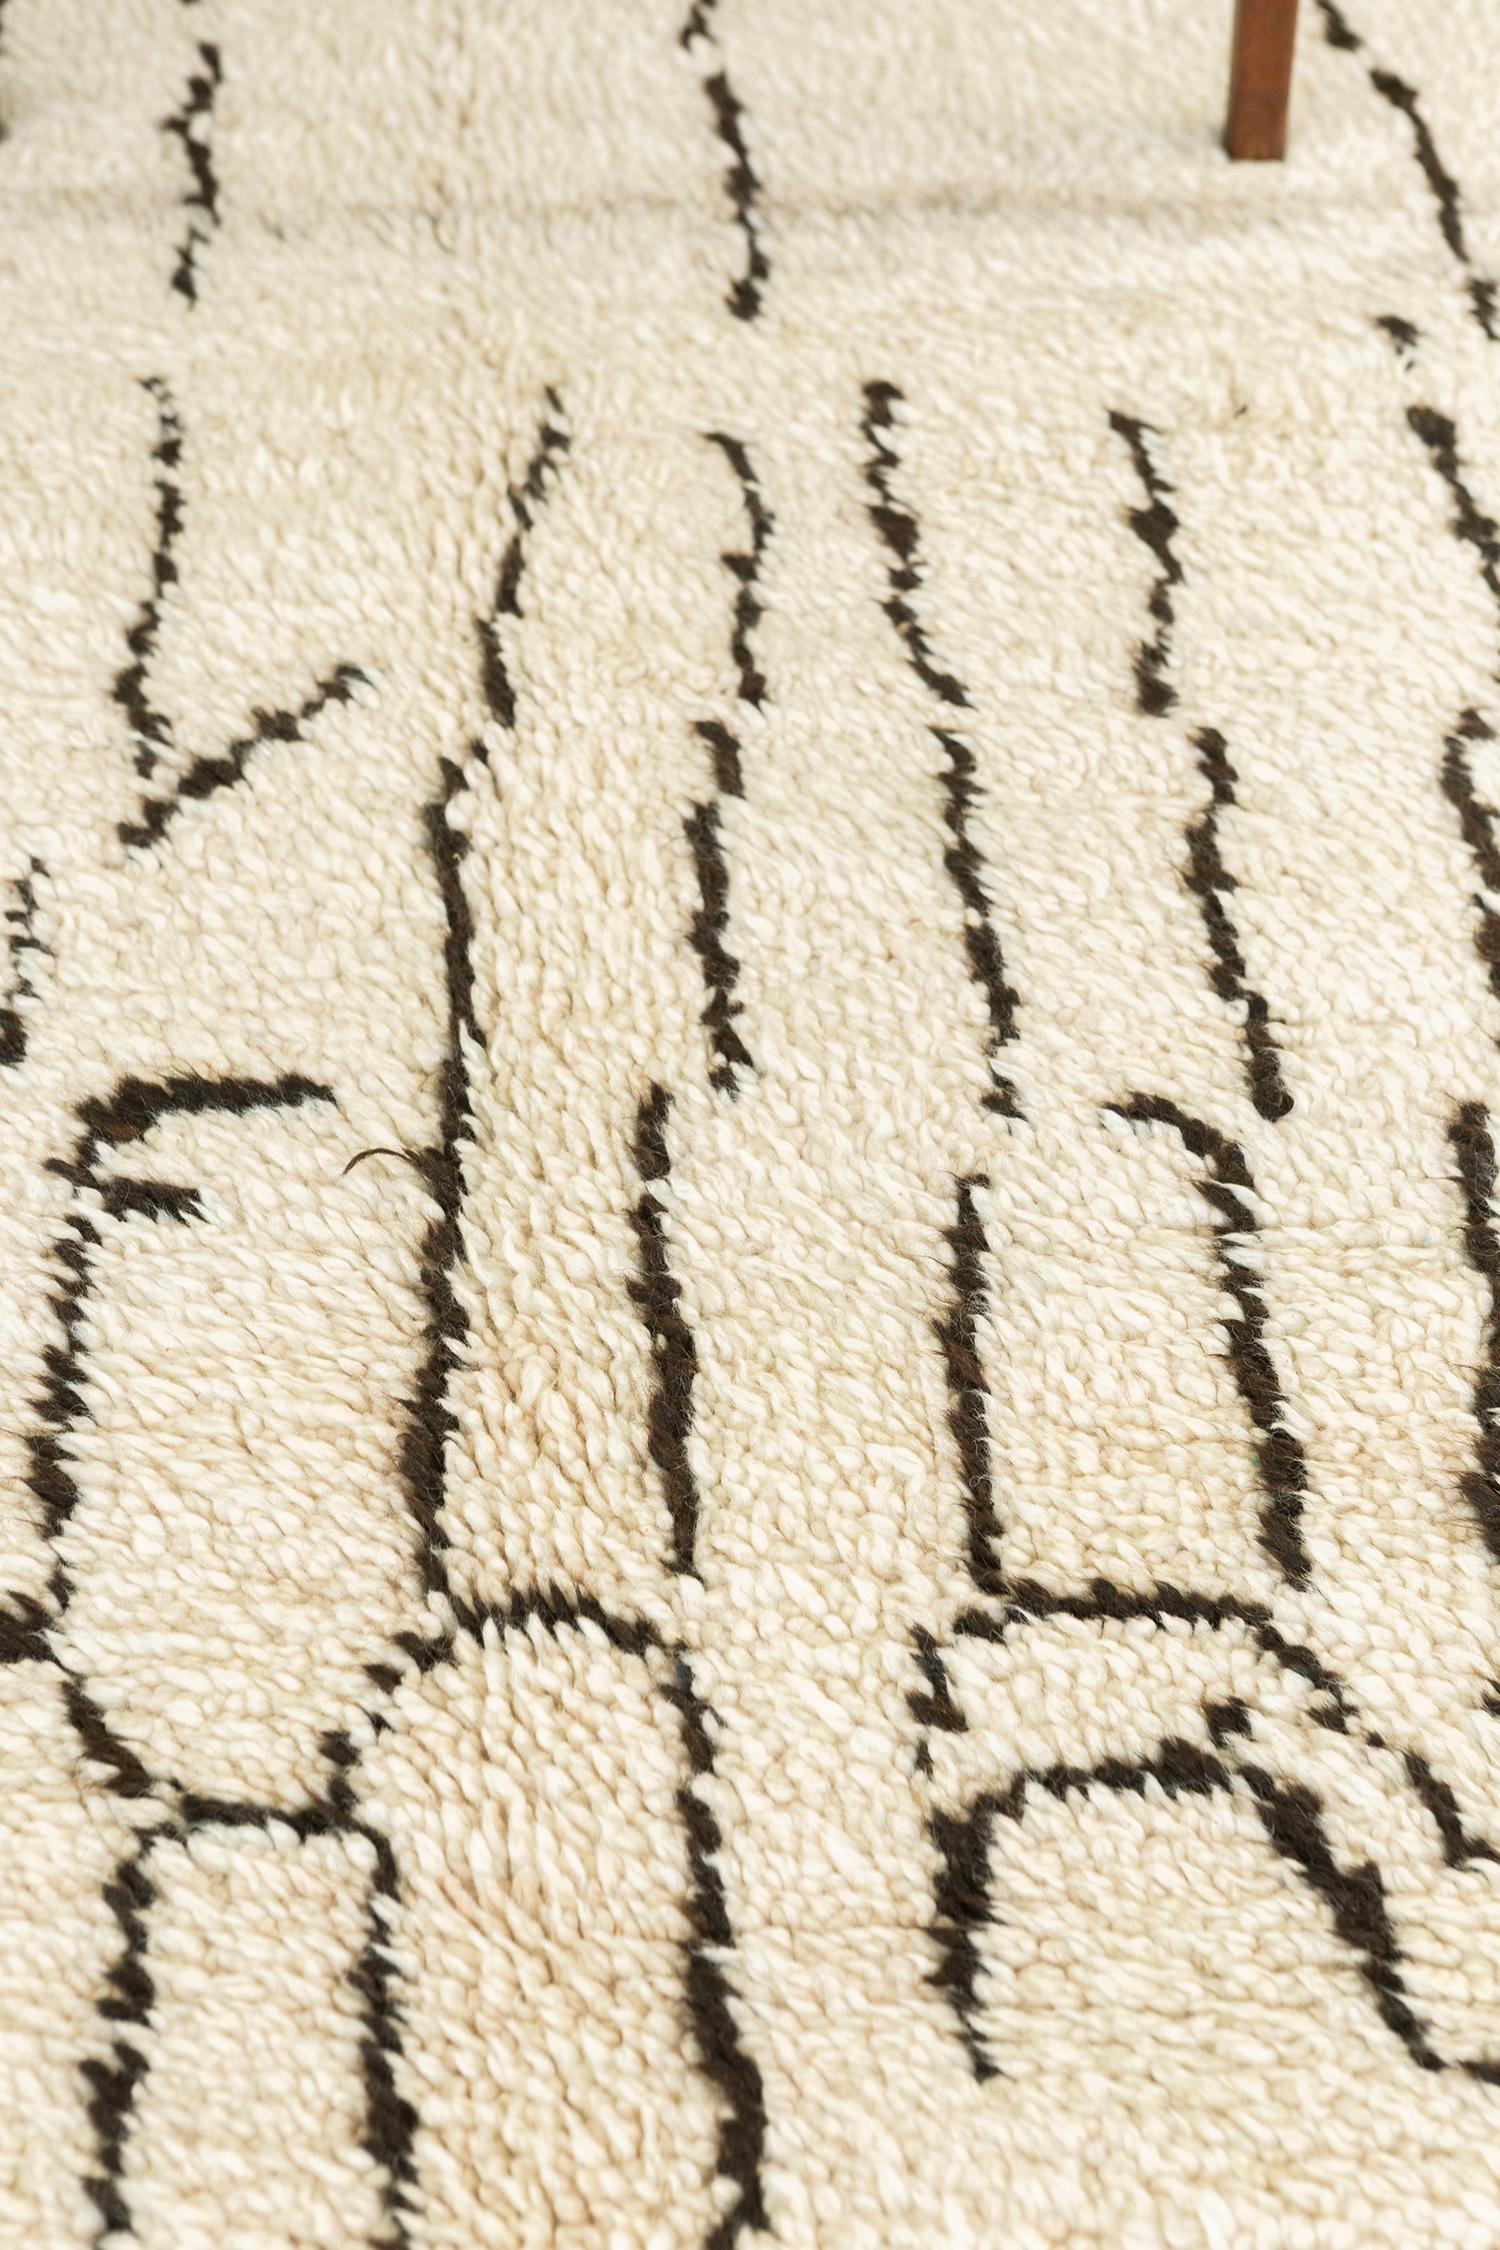 Fancifiez votre pièce avec notre tapis marocain vintage Azilal Tribe de la collection Atlas. Il se compose de symboles berbères ambigus aux contours noisette dans un champ blanc cassé qui rend le tapis plus unique. Un centre de table qui embellira